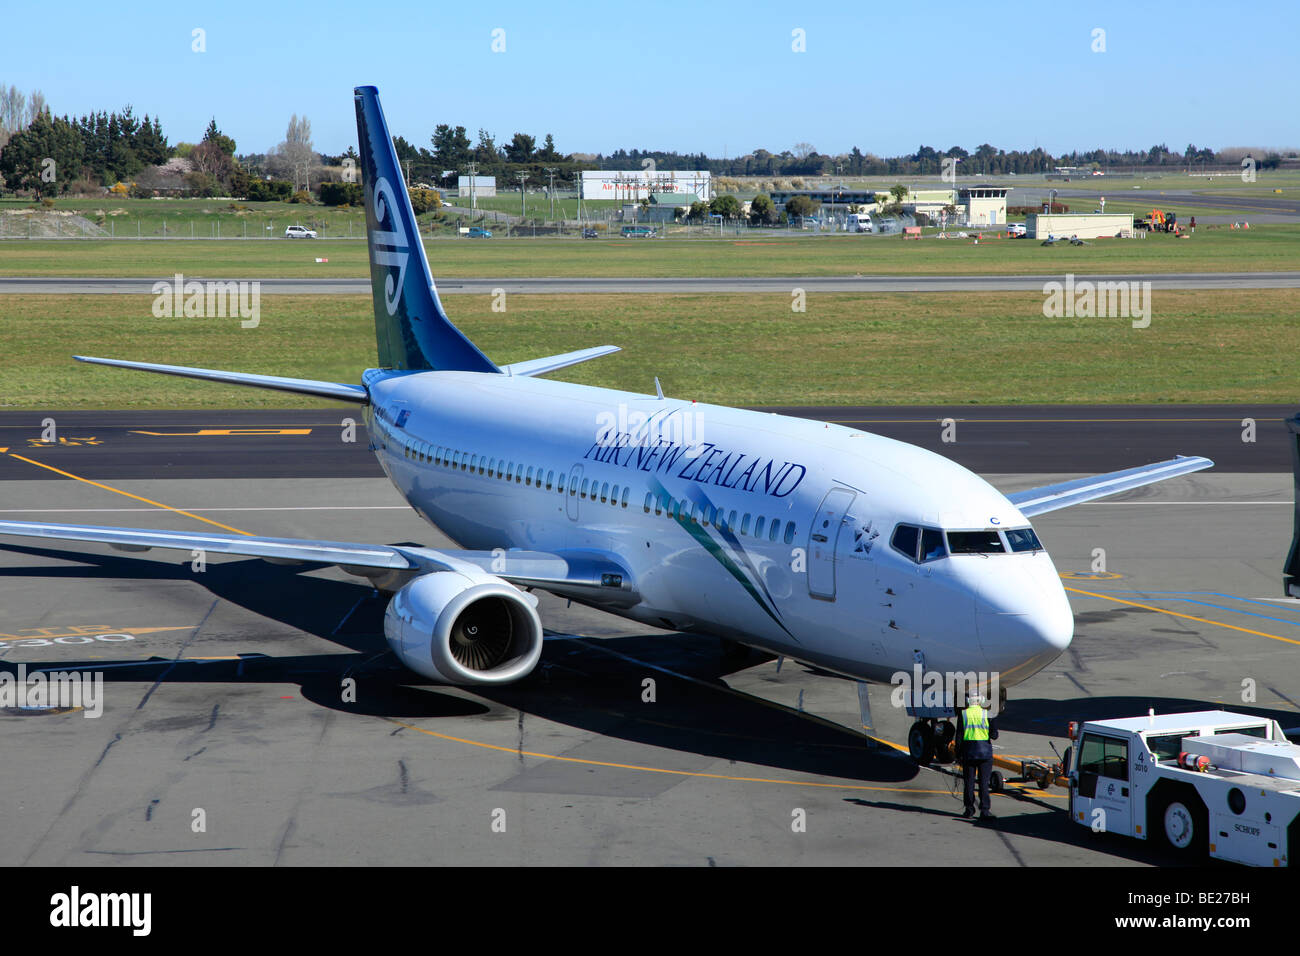 Air New Zealand Boeing 737 geschoben vom Tor von Schlepper am Flughafen von Christchurch, Canterbury, Südinsel, Neuseeland Stockfoto